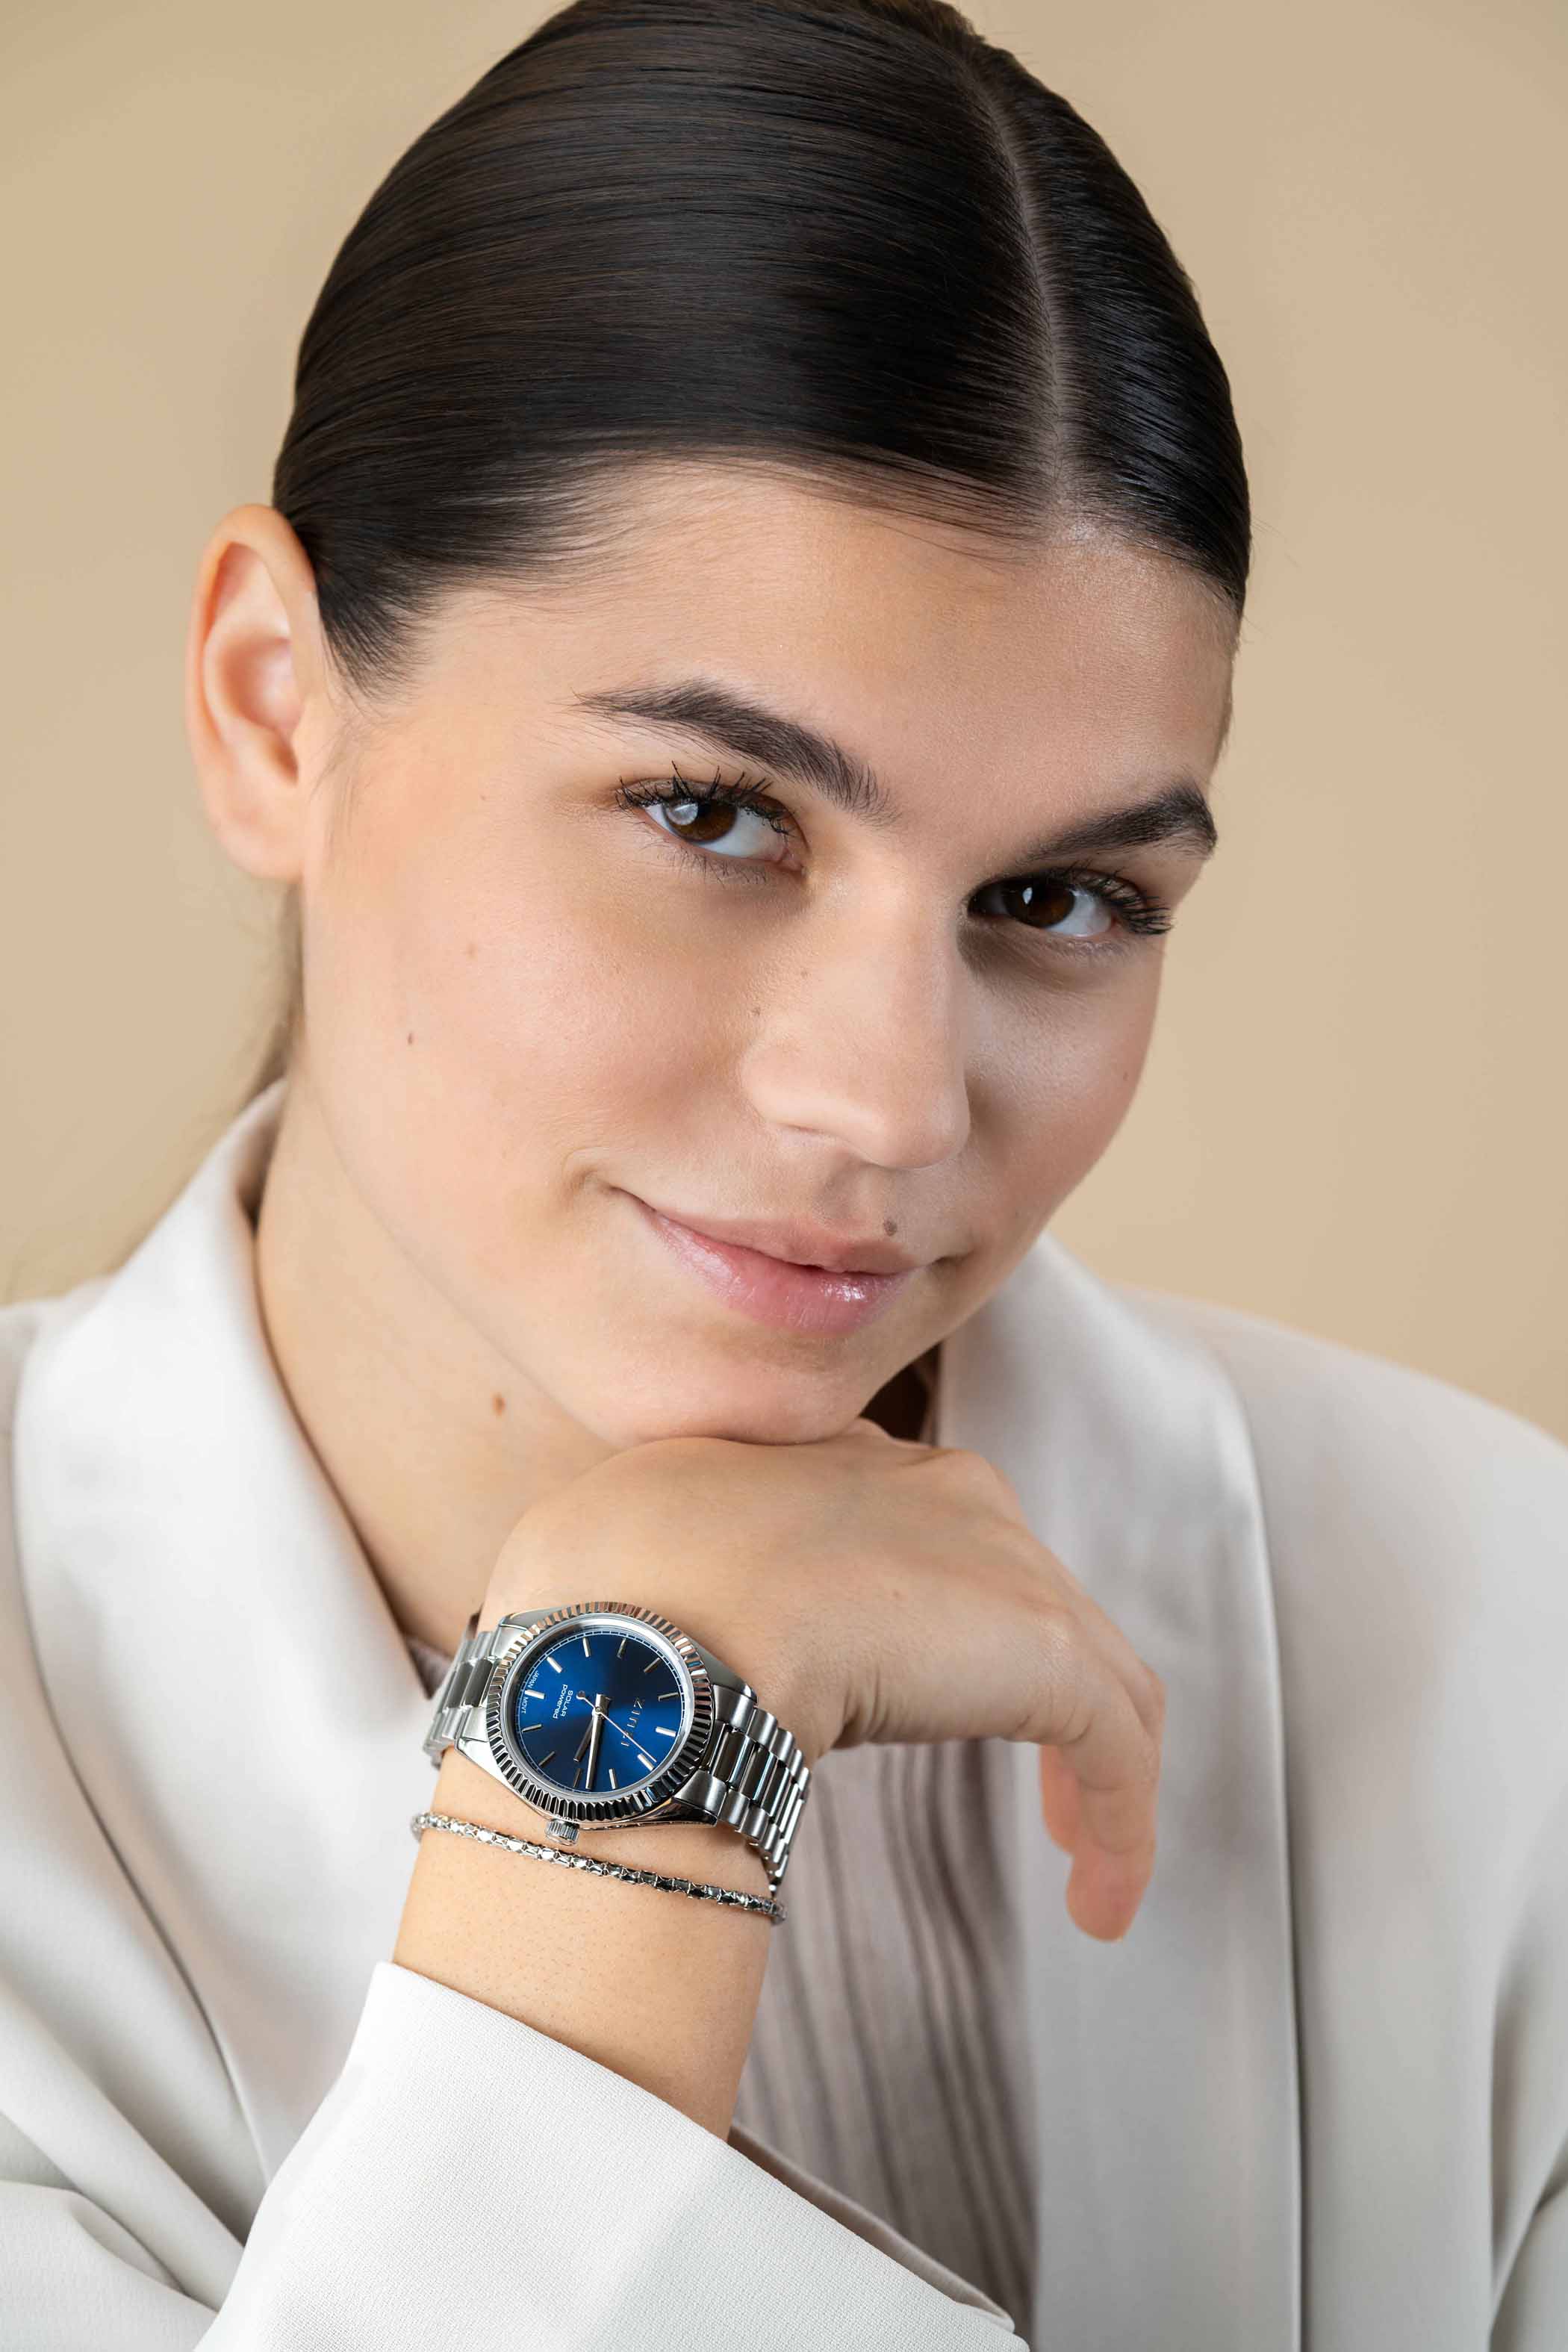 ZINZI Solaris horloge met blauwe wijzerplaat, stalen kast 35mm en stalen band met clip-sluiting. Het Japanse uurwerk loopt op zon- en kunstlicht ZIW2155
